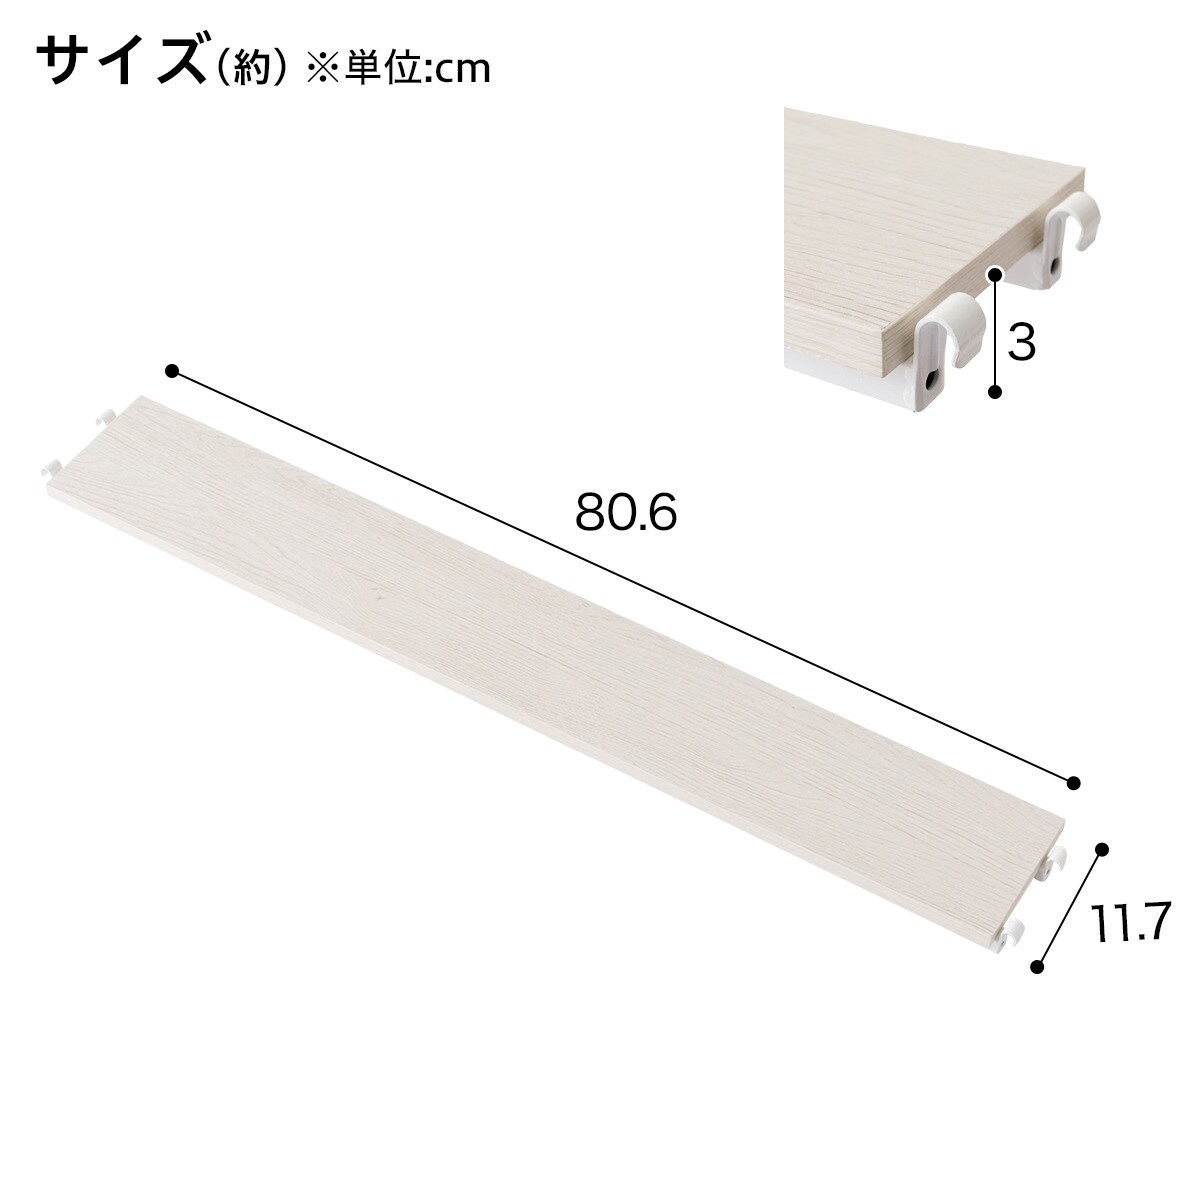 【Nポルダ専用】追加棚板 奥行ハーフ(幅80cm用)